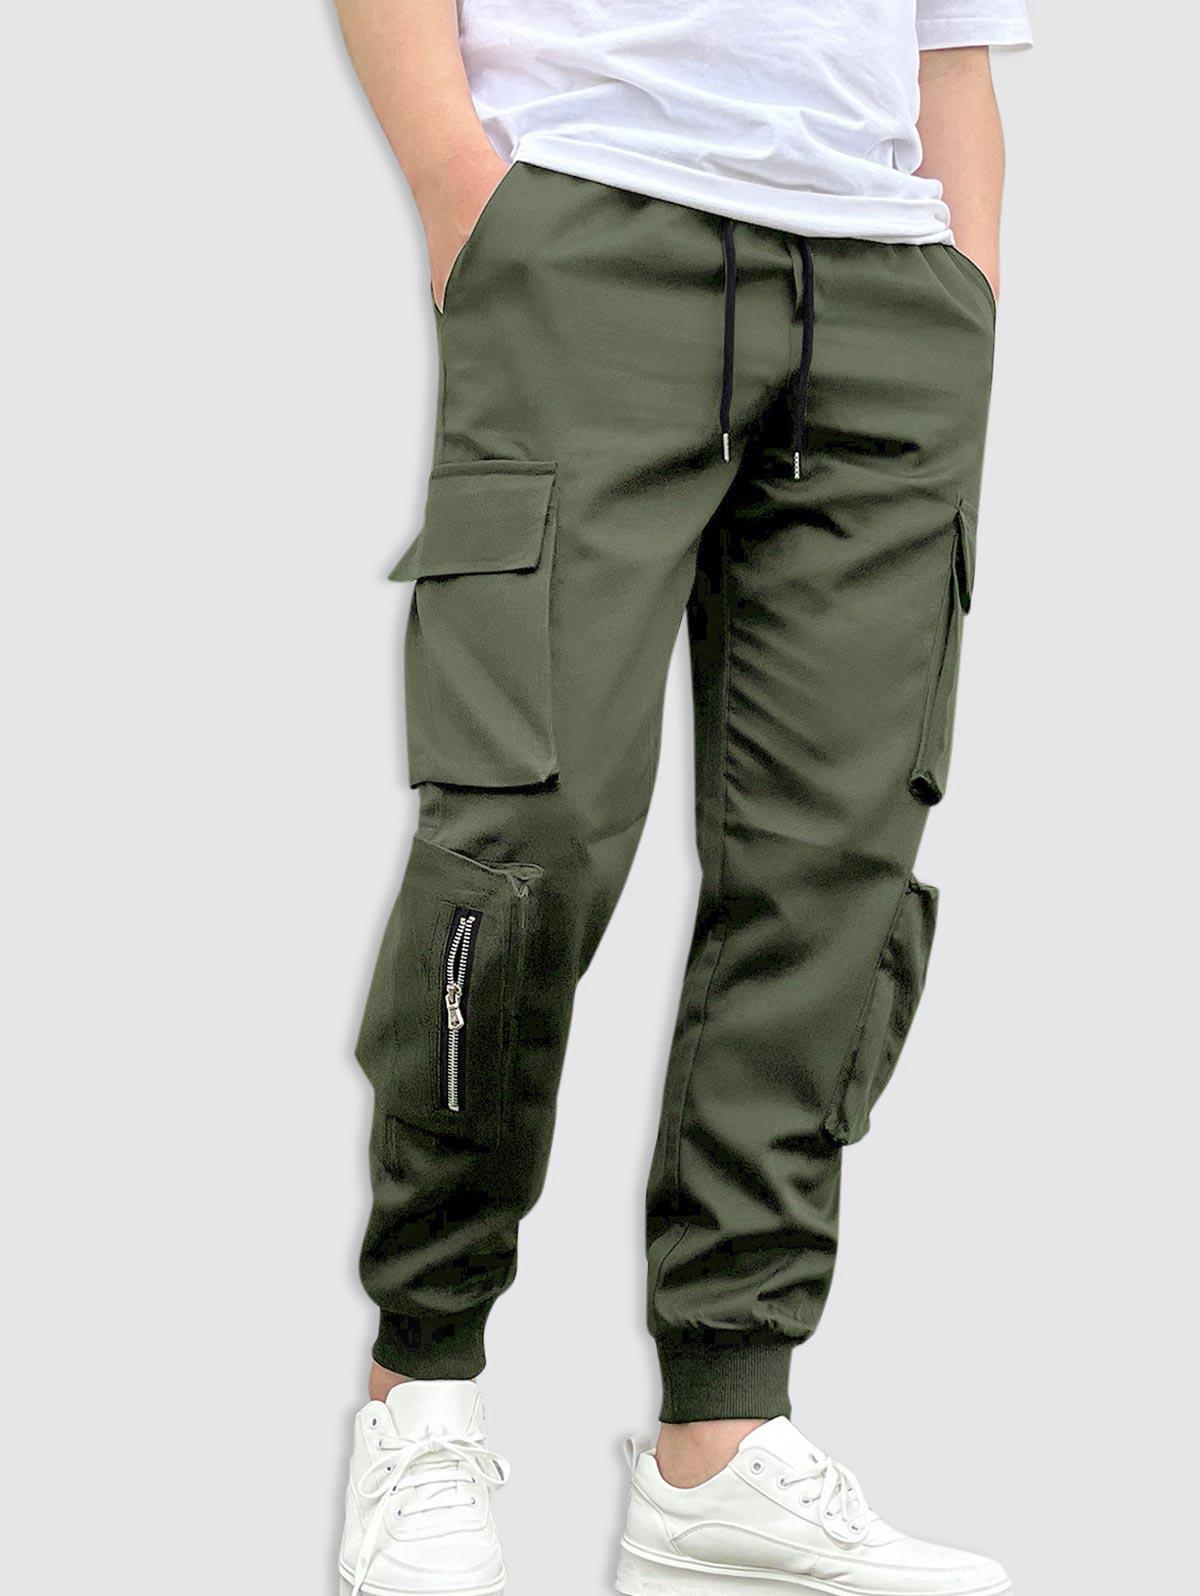 ZAFUL Men's ZAFUL Streetwear Zip Multi-pockets Design Beam Feet Cargo Pants S Deep green